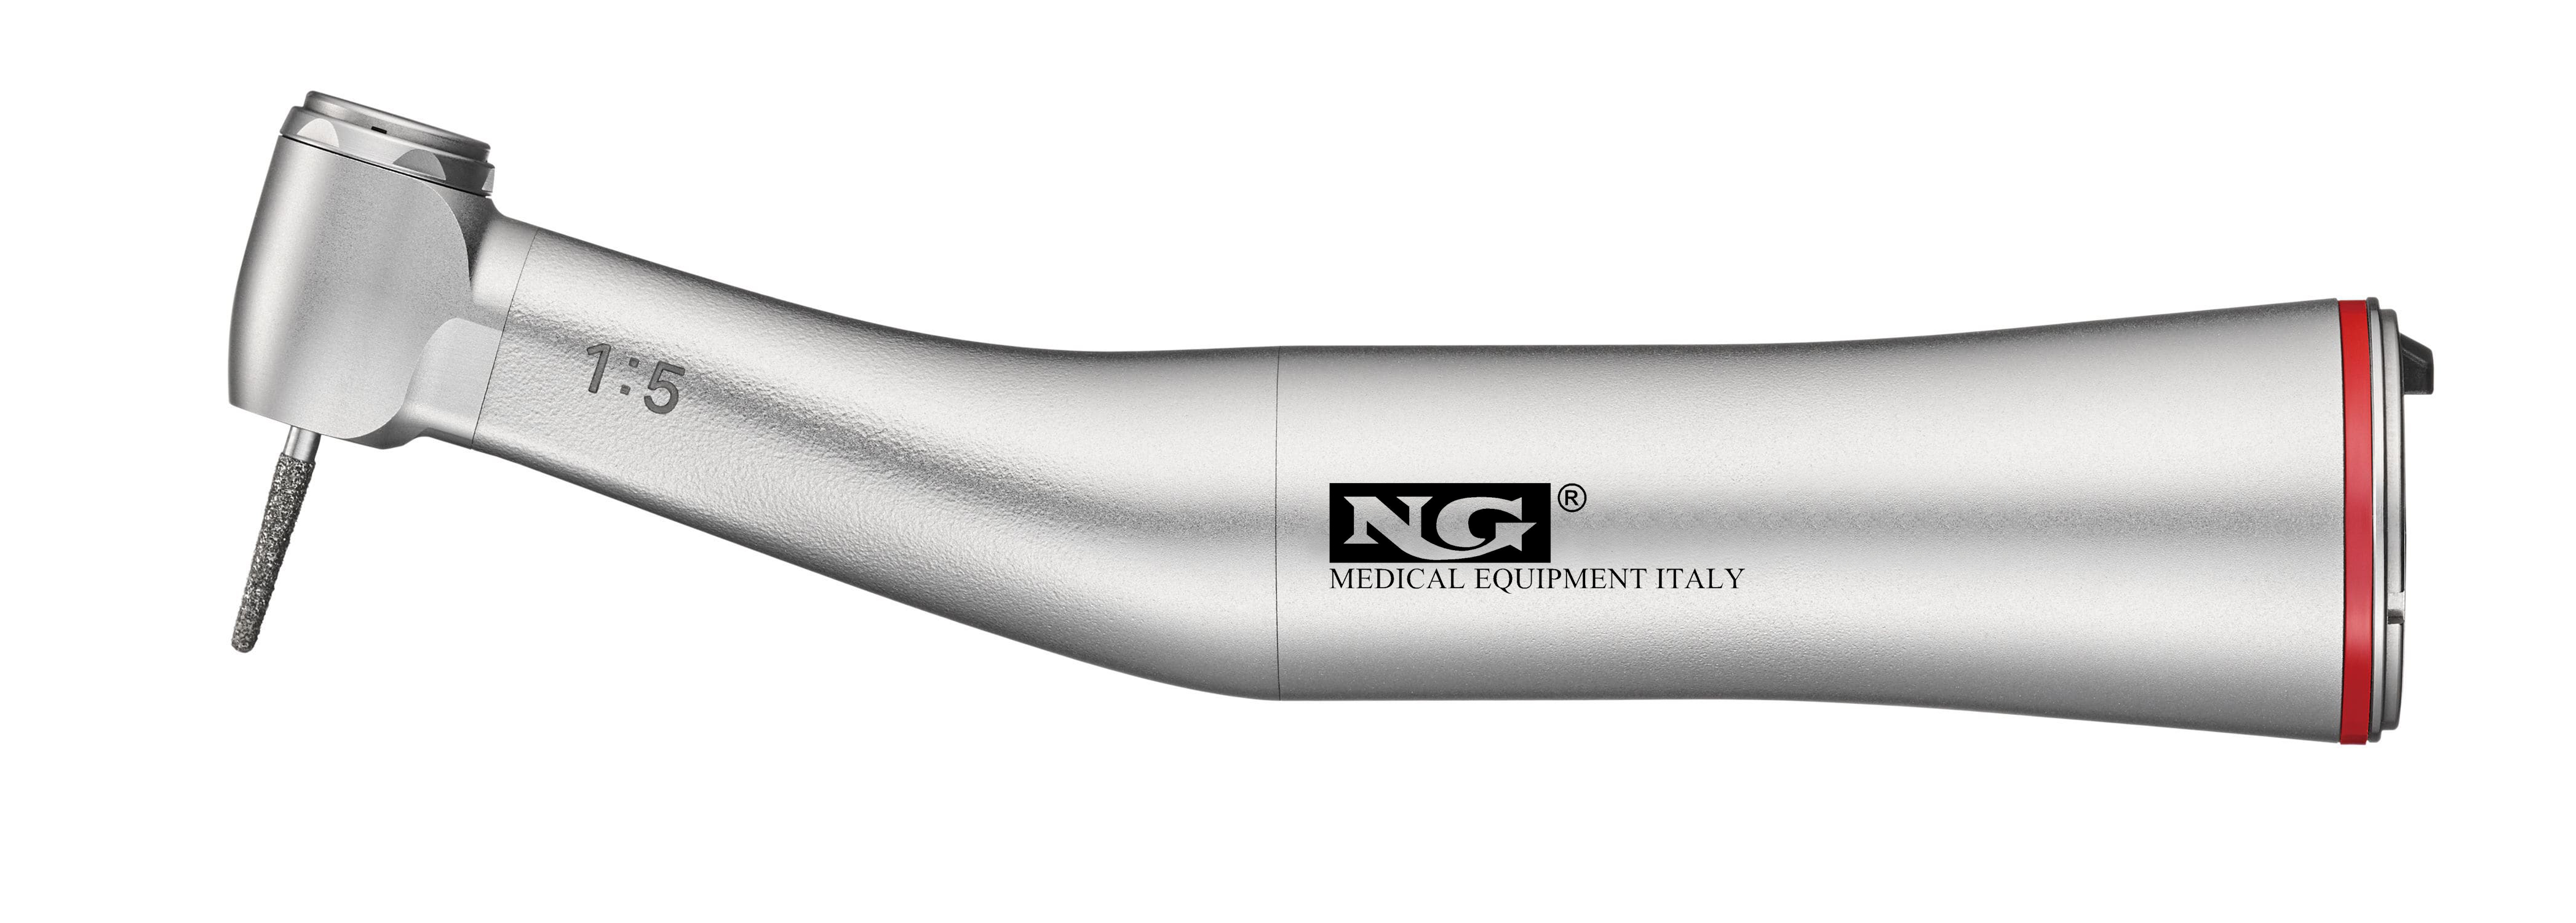 NG Medical Equipment Italy